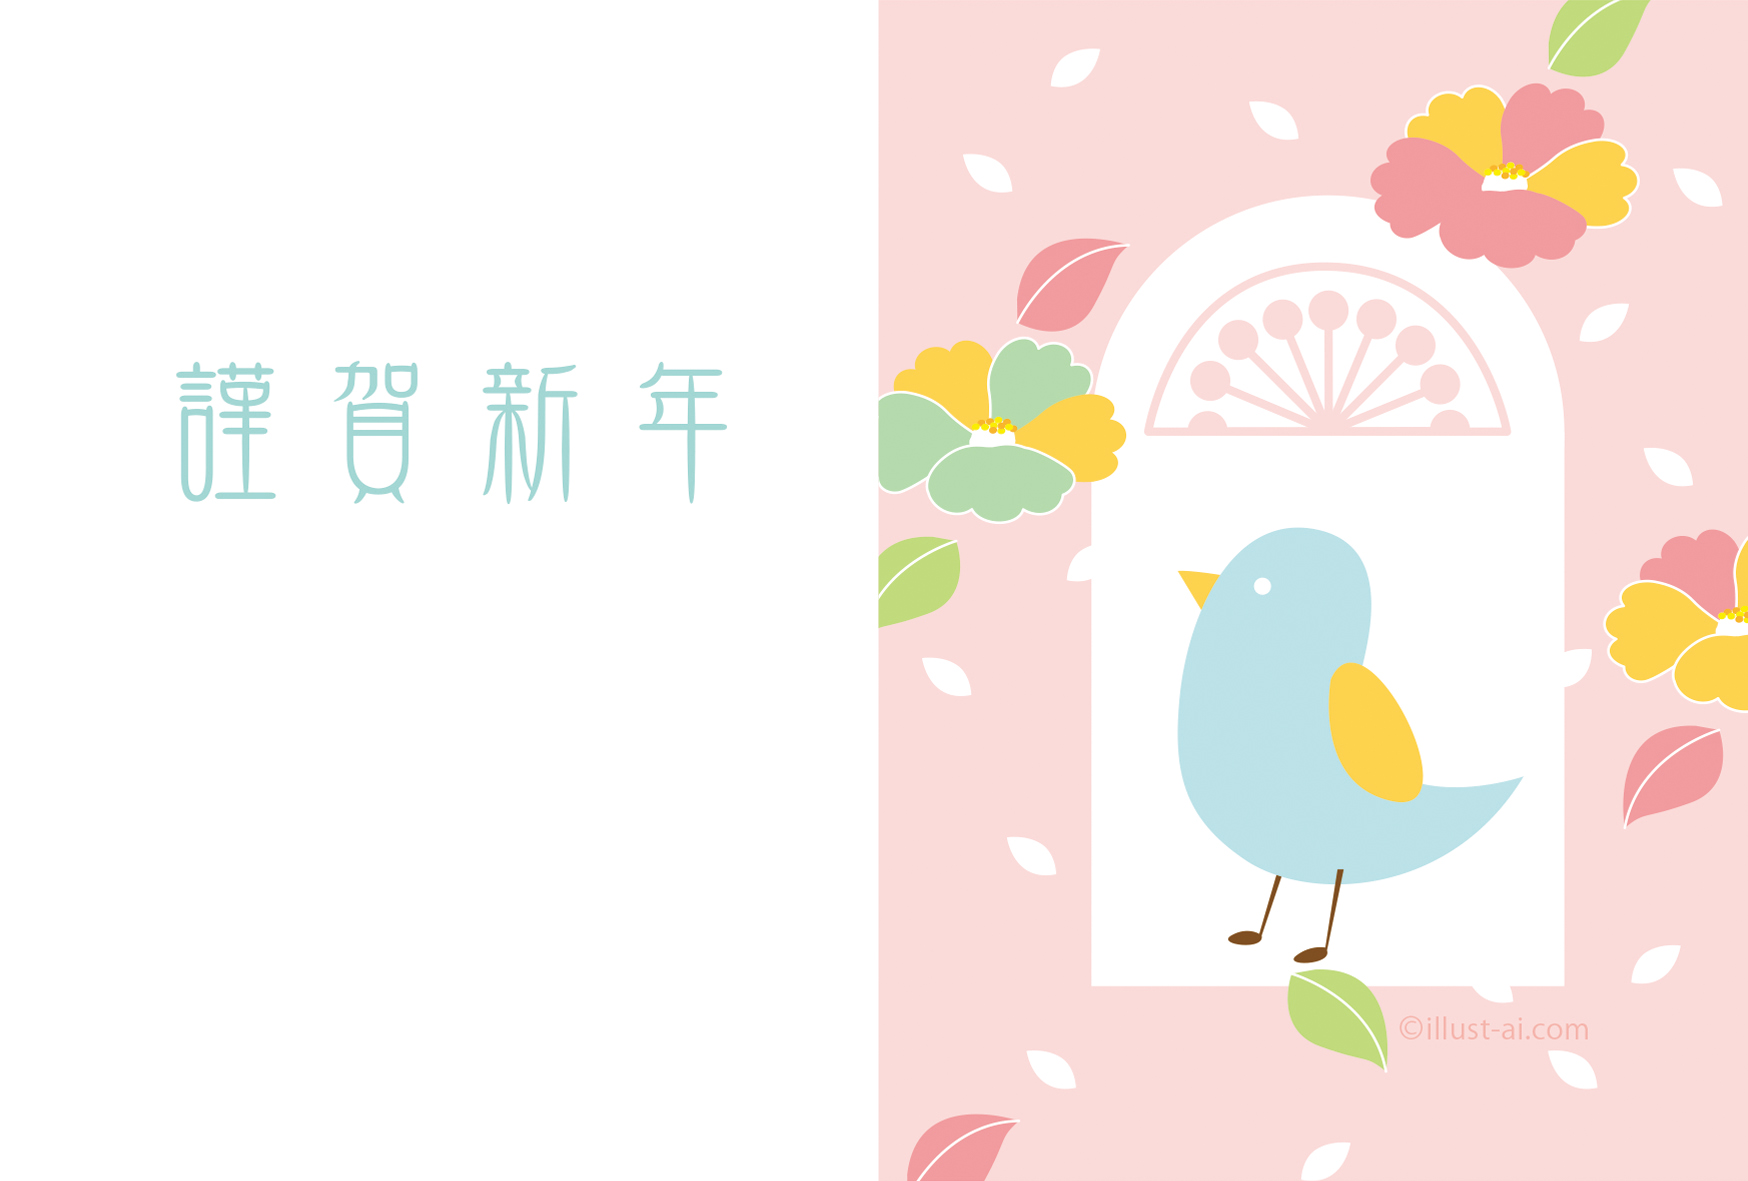 小鳥と椿のイラストがほっこりレトロなデザイン 年賀状17無料イラスト素材集